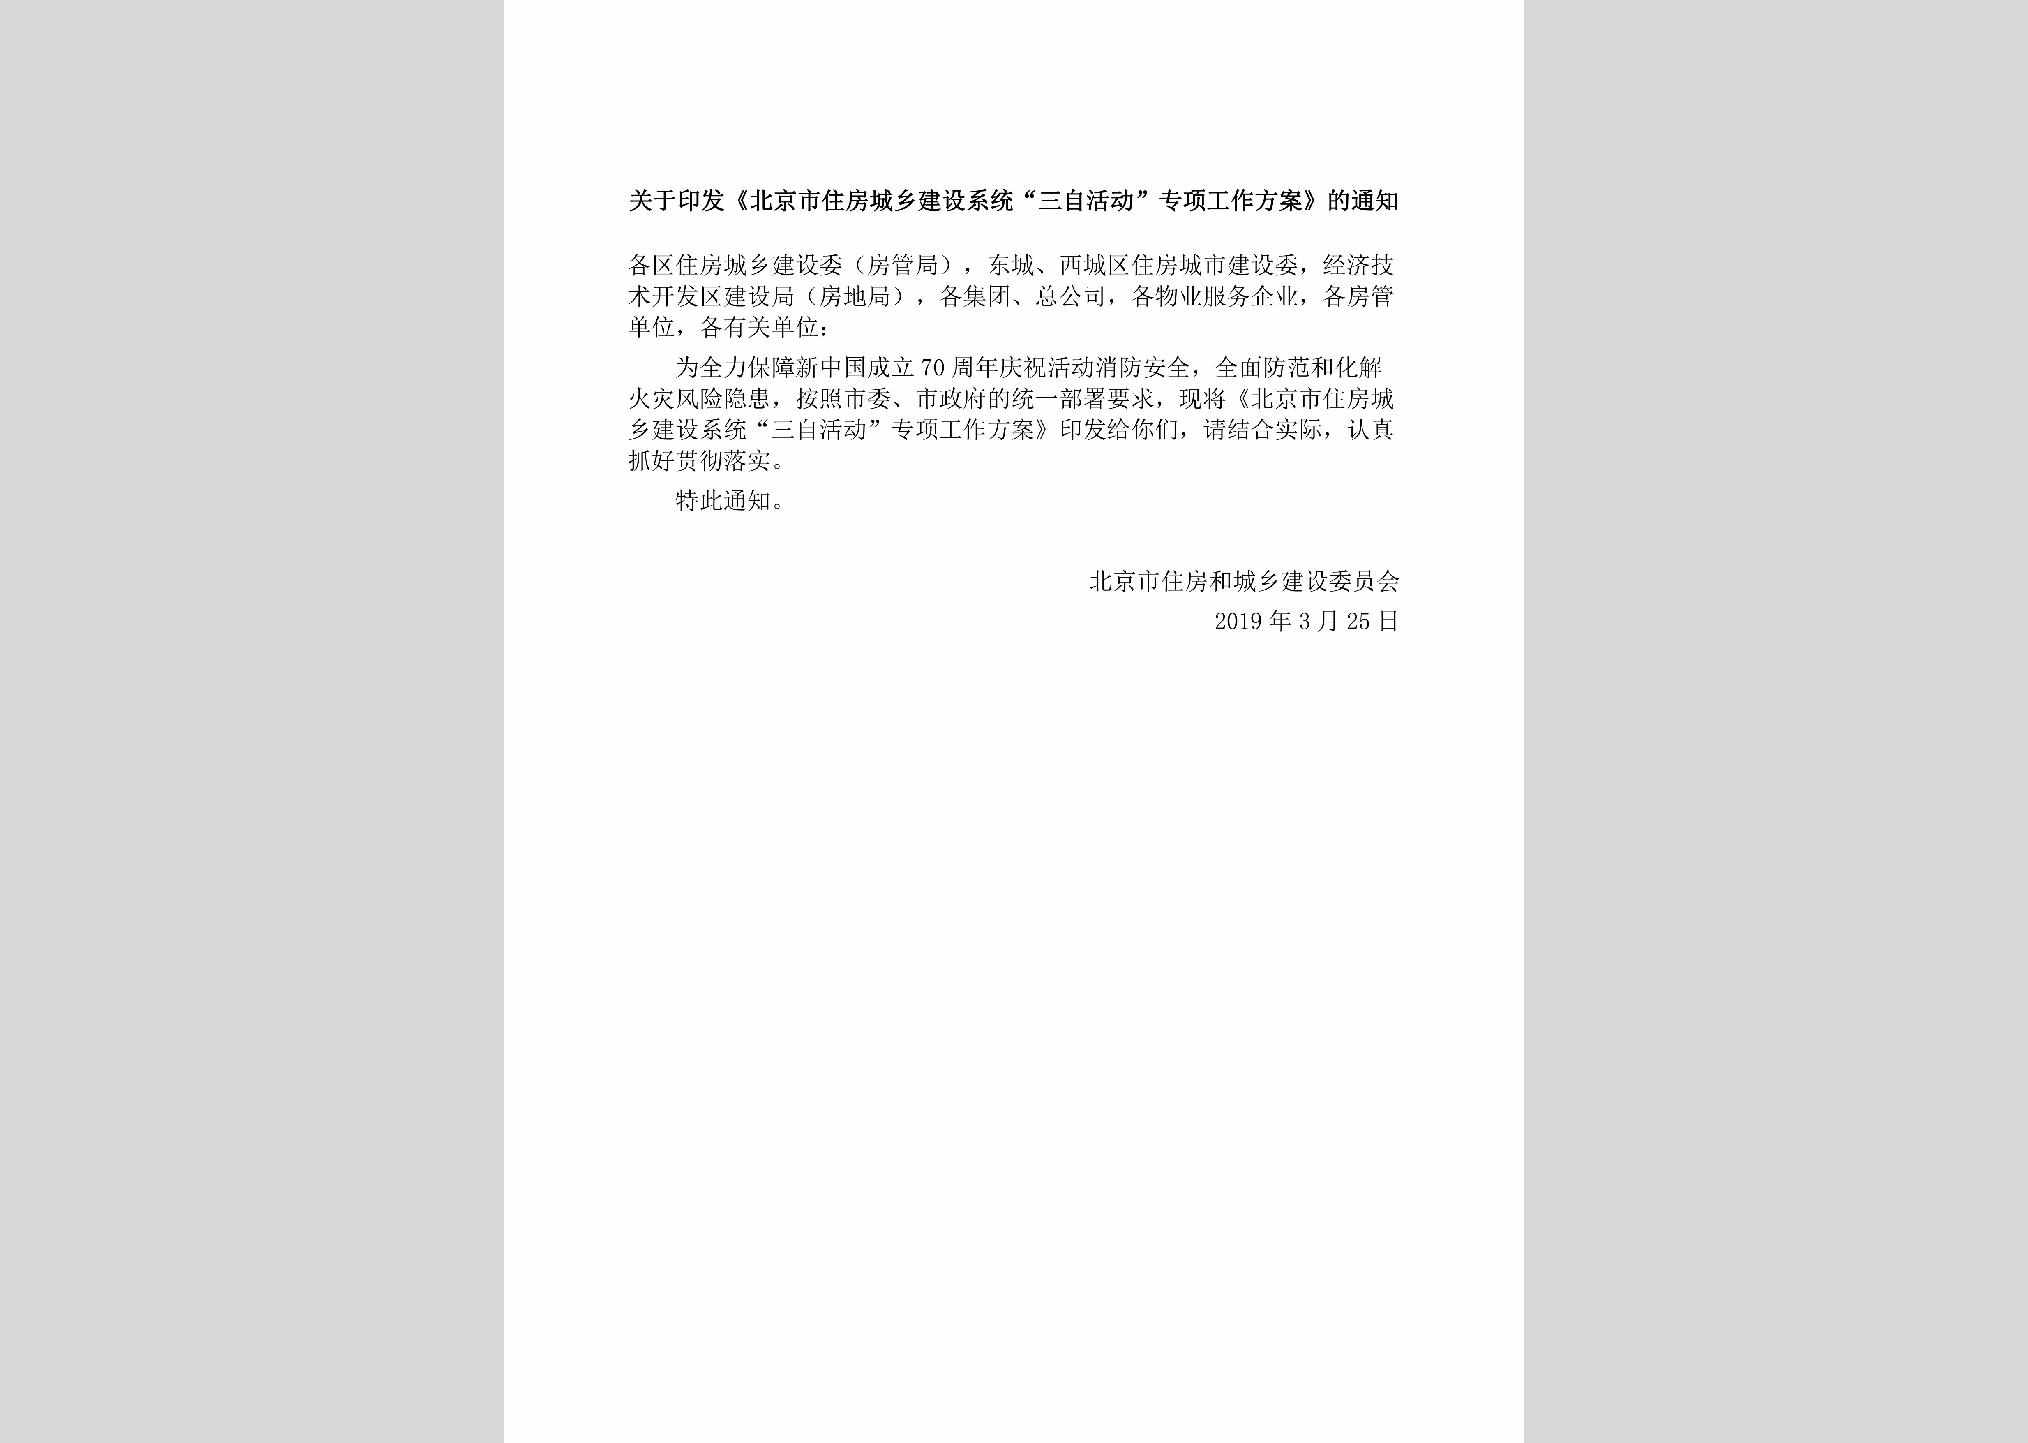 BJ-SZHDZXGZ-2019：关于印发《北京市住房城乡建设系统“三自活动”专项工作方案》的通知